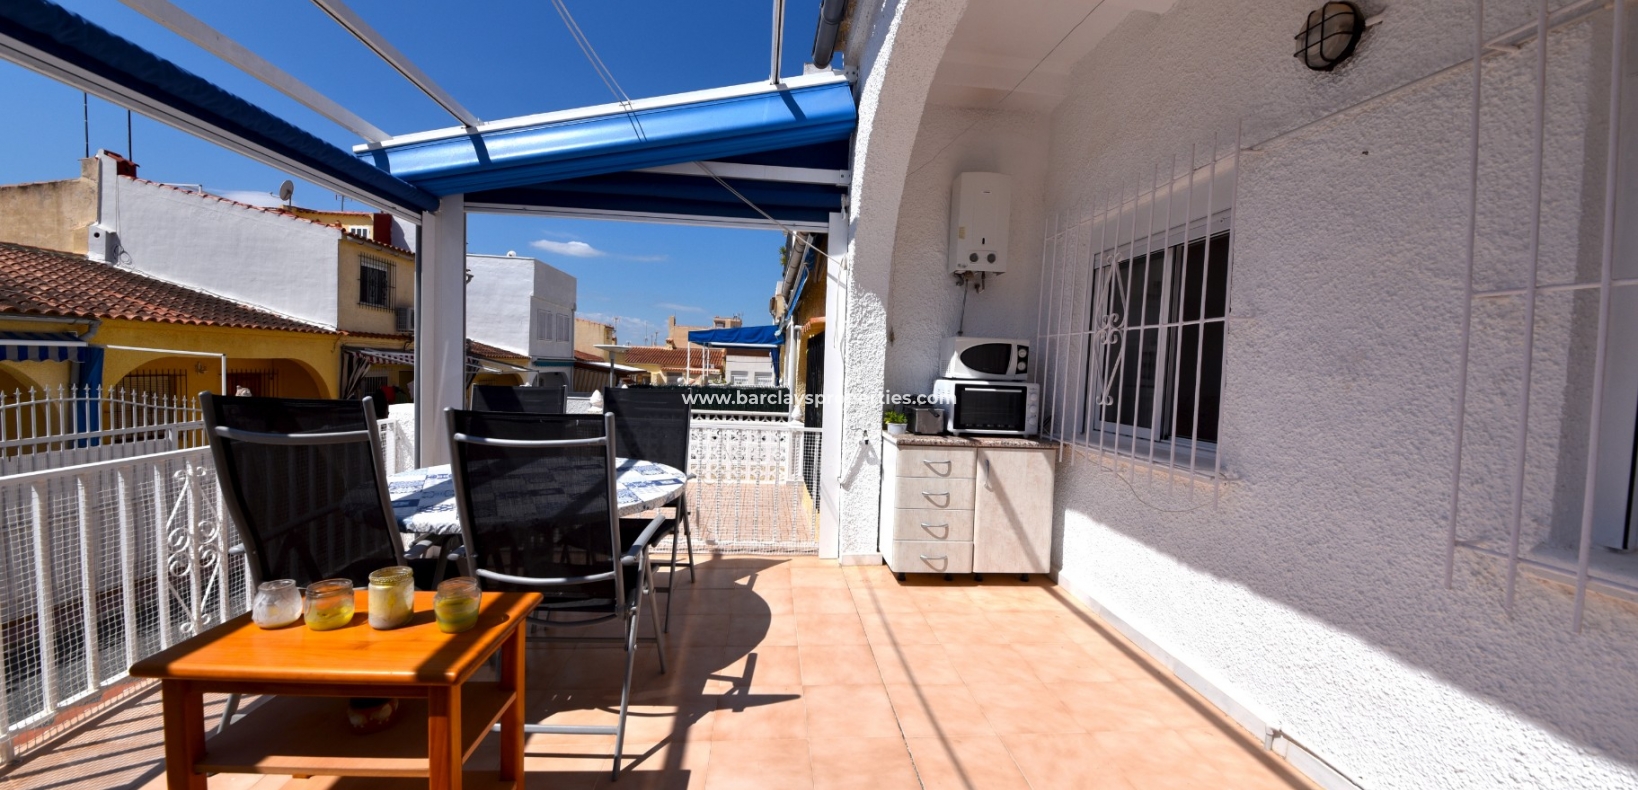 Terrasse - Terrassenhaus zum Verkauf in La Marina Spanien